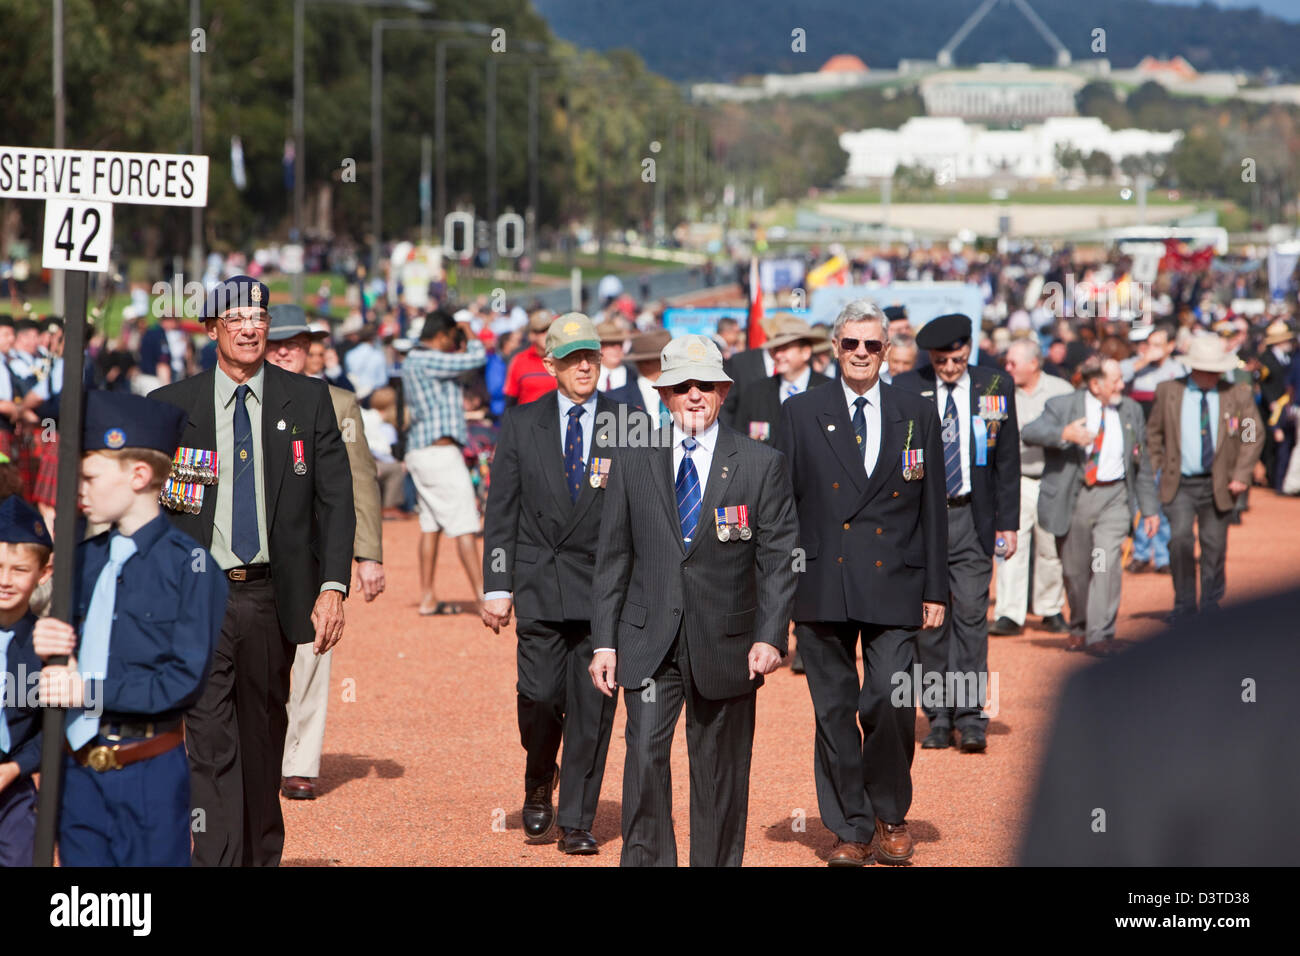 Recueillir des anciens combattants pour la commémoration du Jour de l'Anzac. Canberra, Territoire de la capitale australienne (ACT), l'Australie Banque D'Images